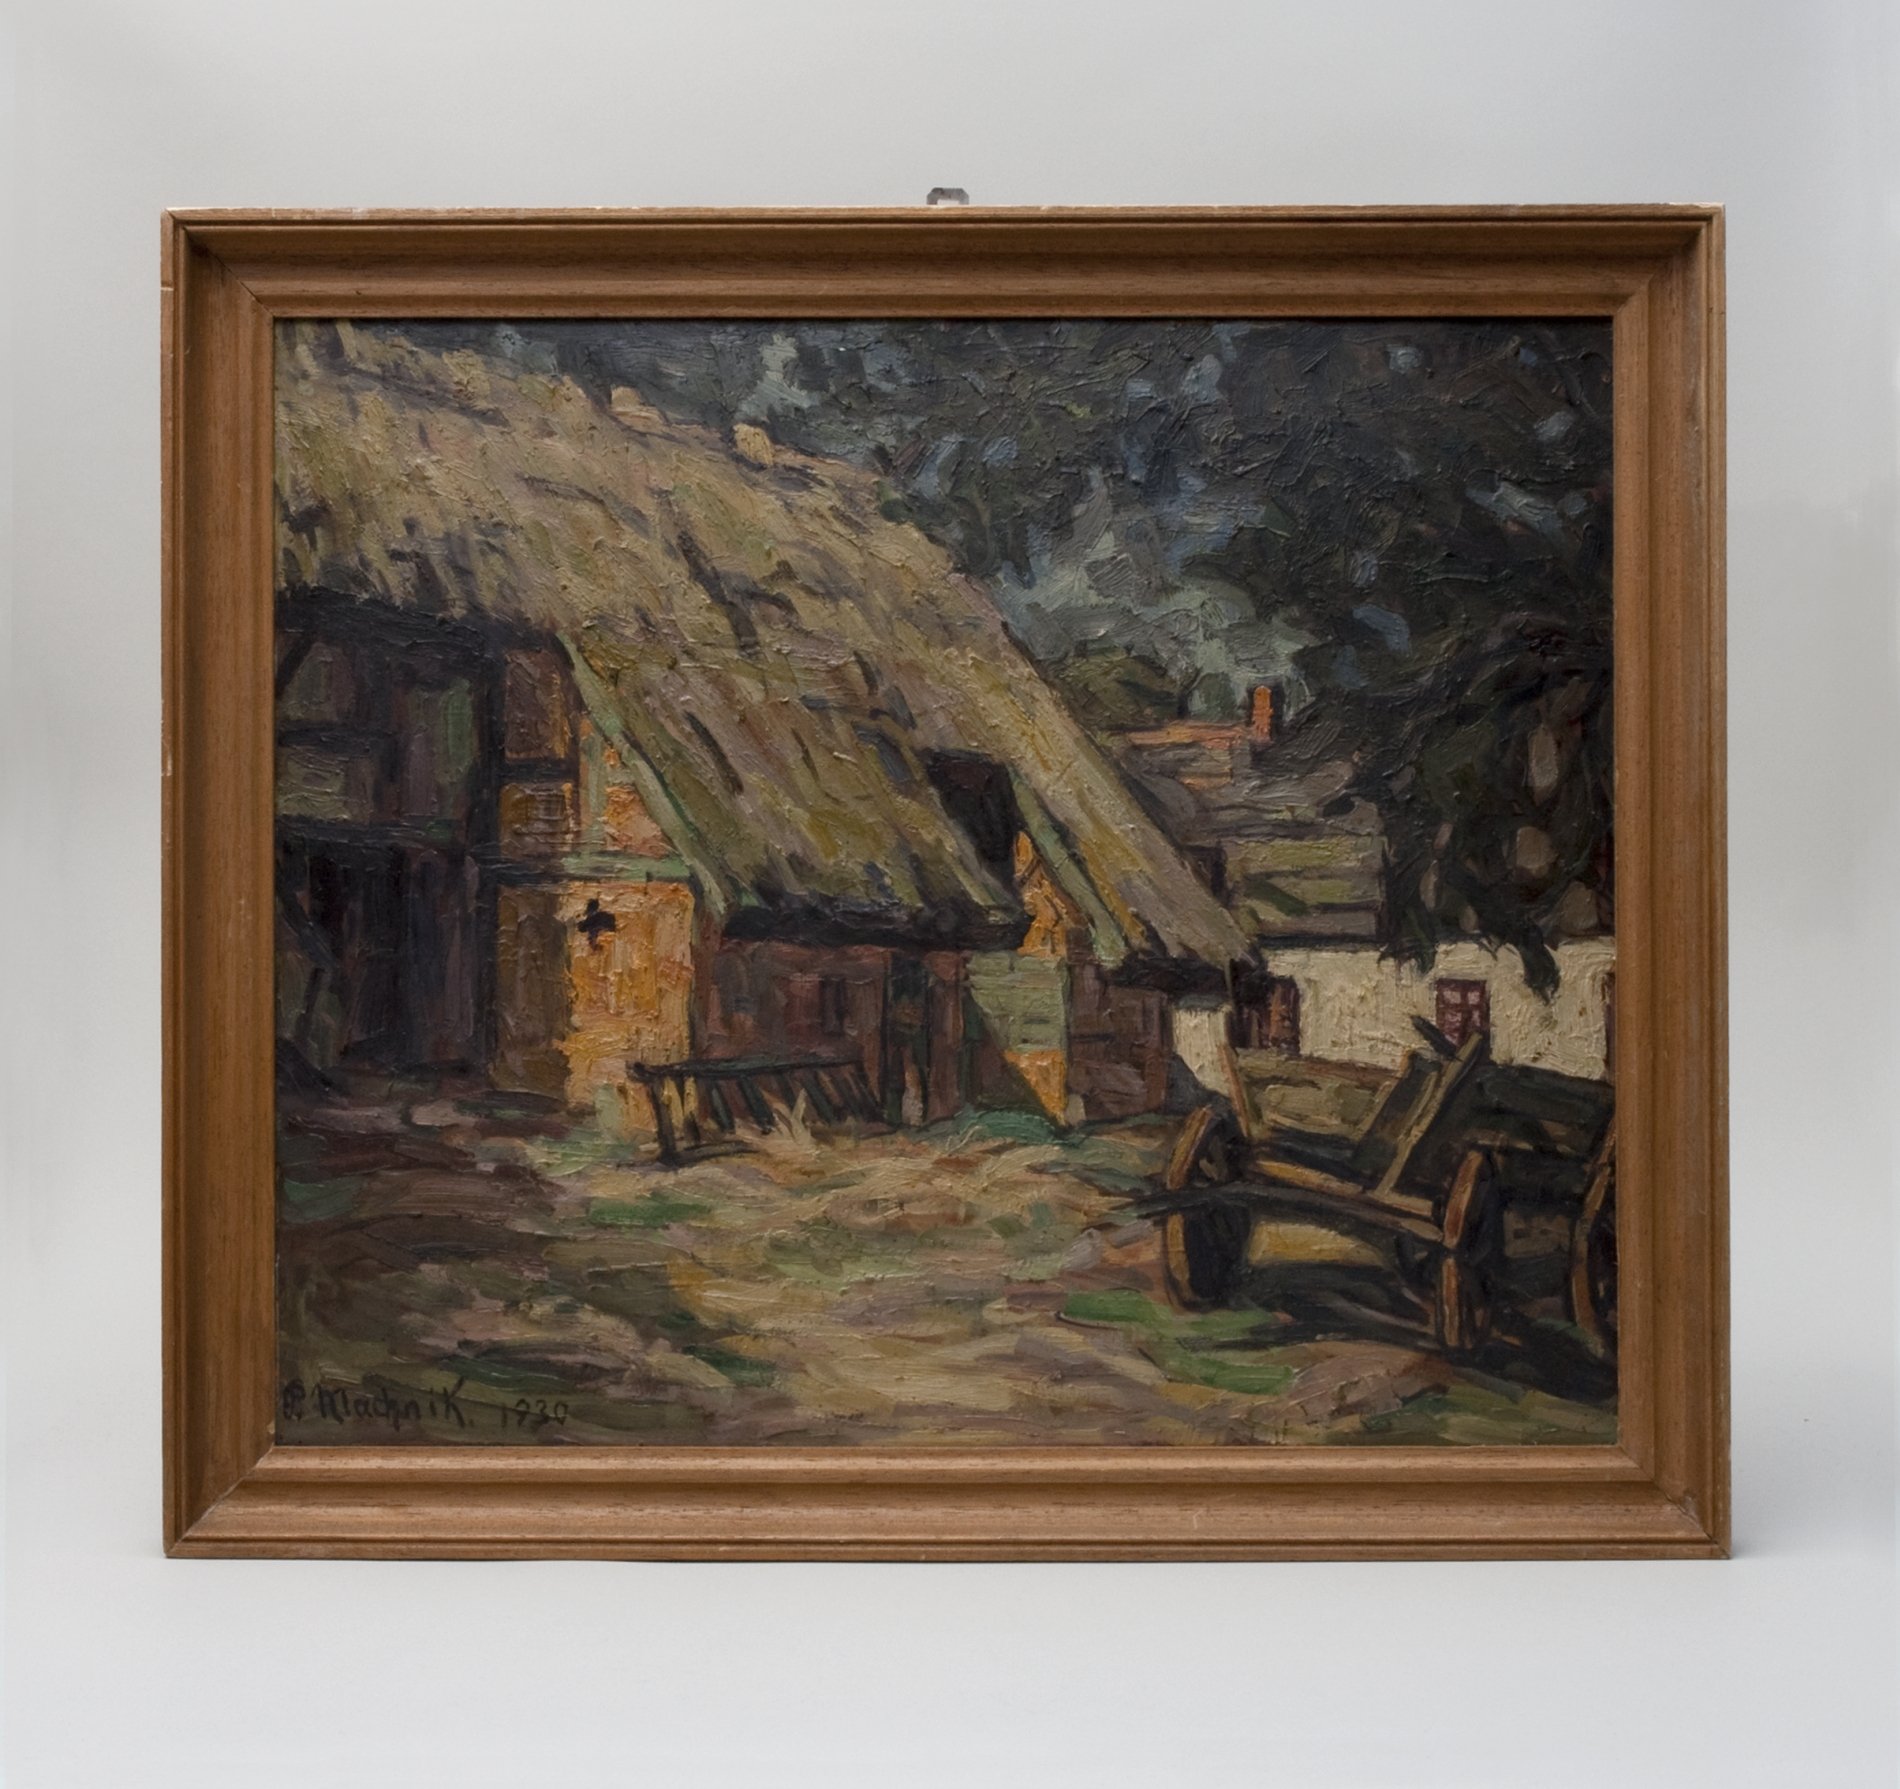 Gemälde ohne Titel (Bauernhof), 1930 (Stiftung Domäne Dahlem - Landgut und Museum, Weiternutzung nur mit Genehmigung des Museums CC BY-NC-SA)